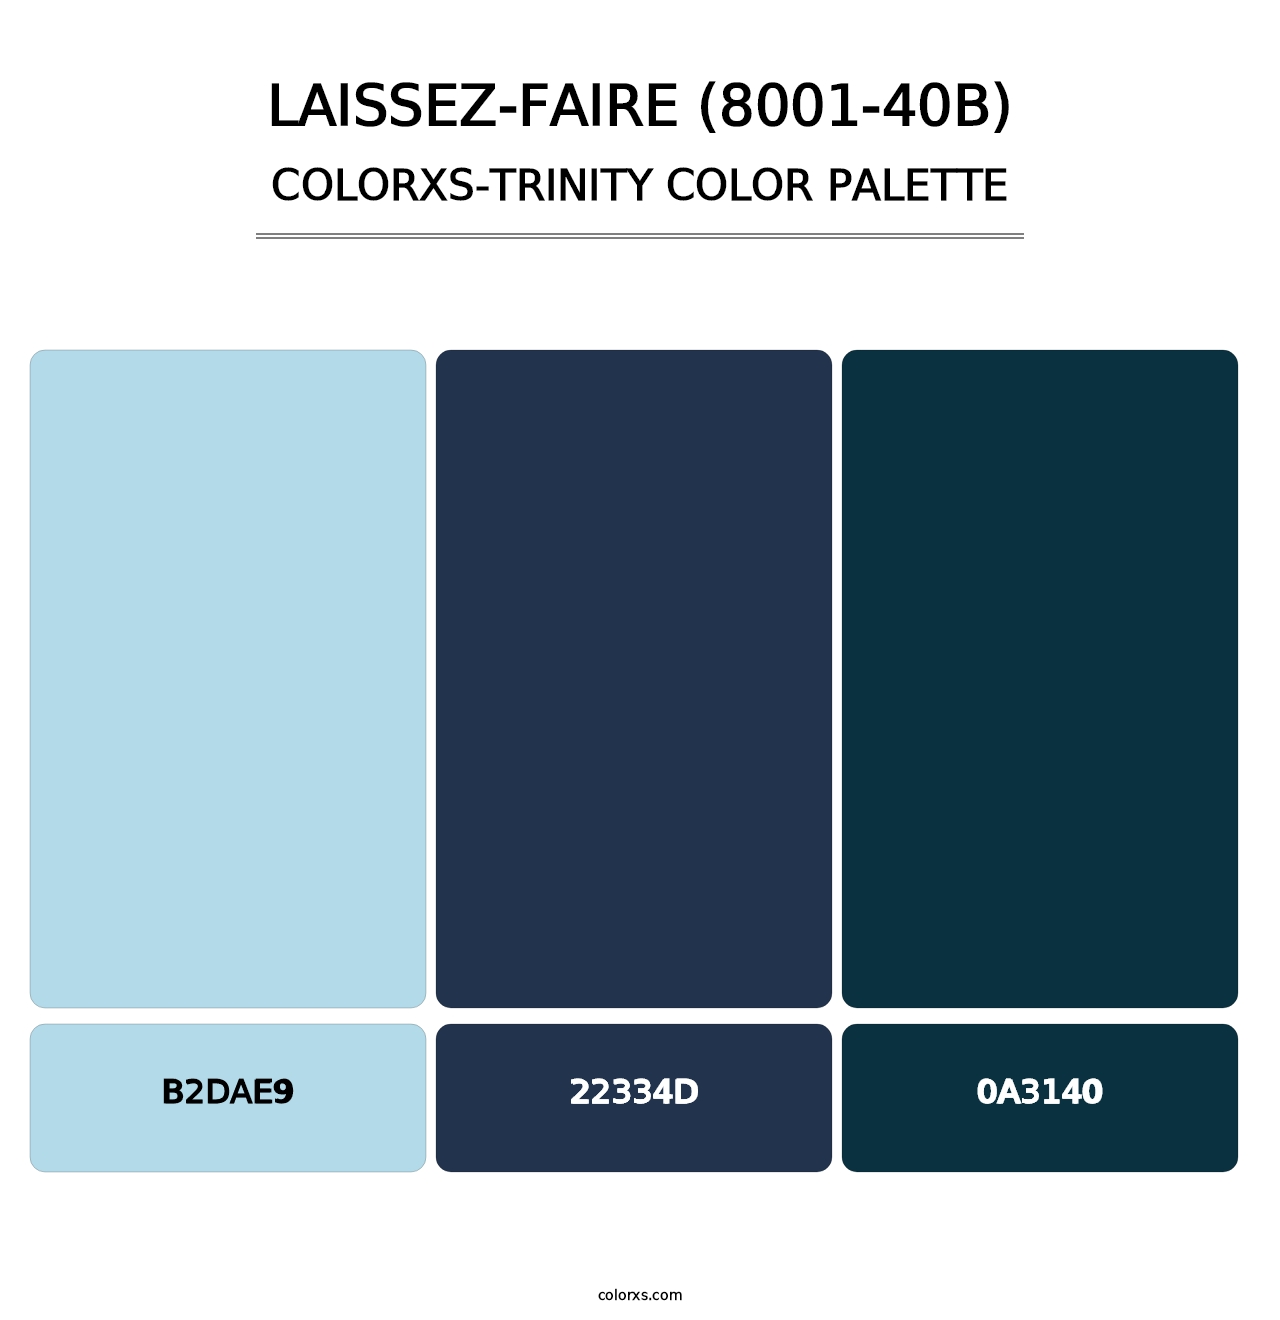 Laissez-Faire (8001-40B) - Colorxs Trinity Palette